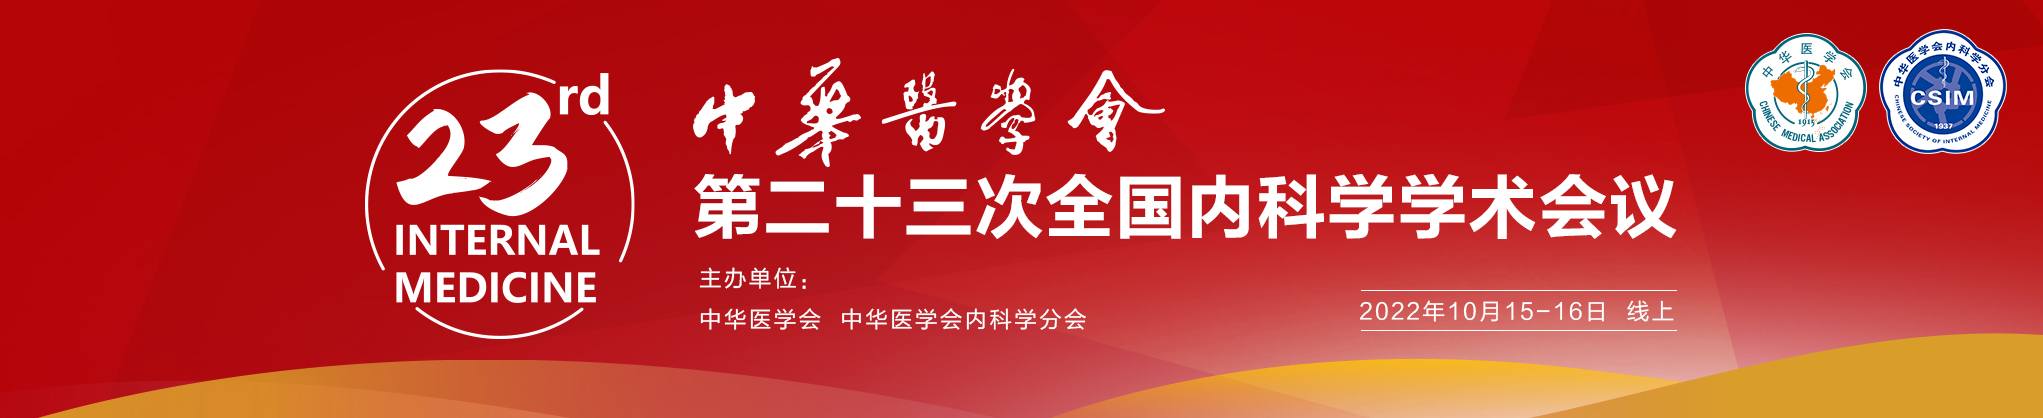 中华医学会第二十三次全国内科学学术会议